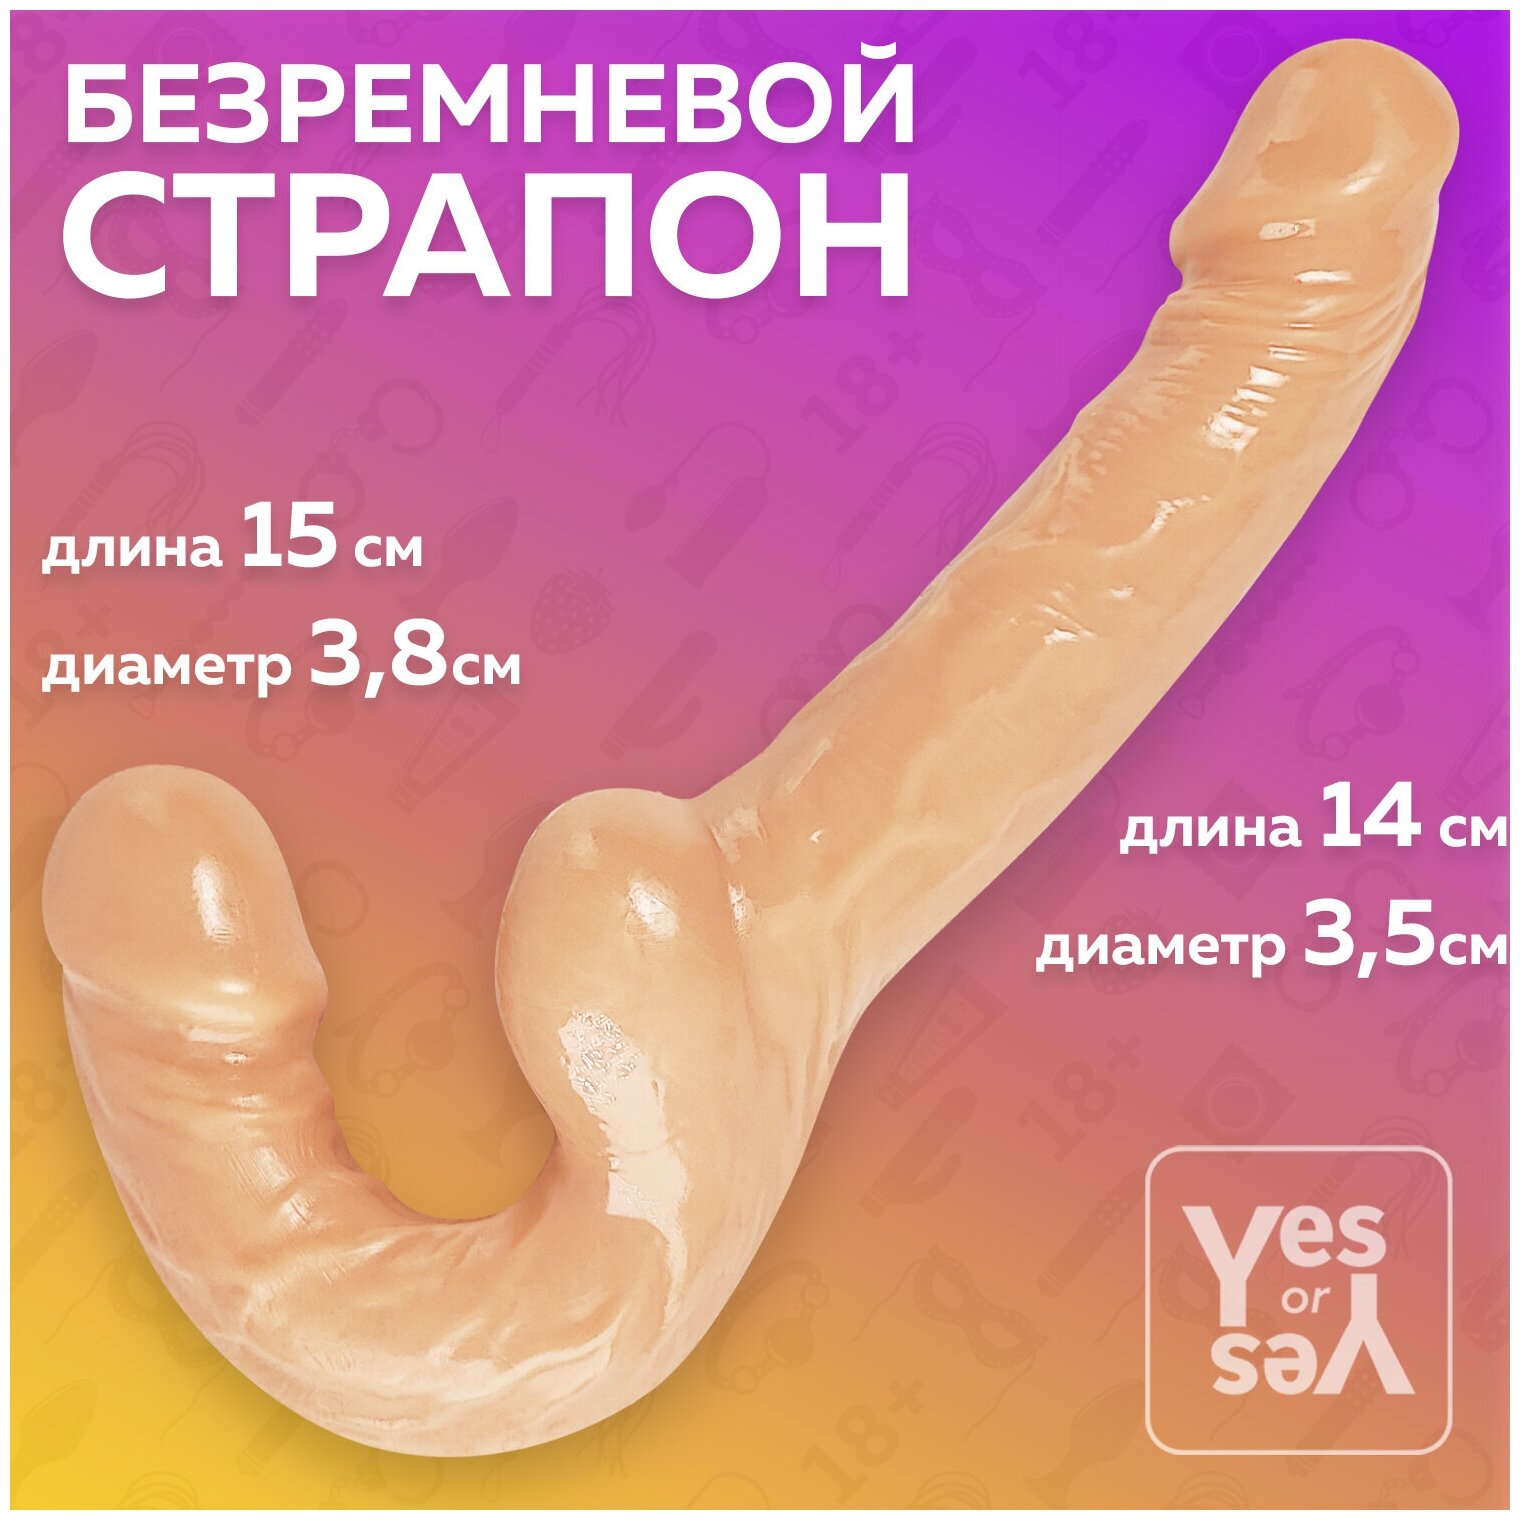 Безремневой страпон реалистичный, Интим игрушка для пар, Секс игрушки, 18+, Yes or Yes — купить по низкой цене на Яндекс Маркете